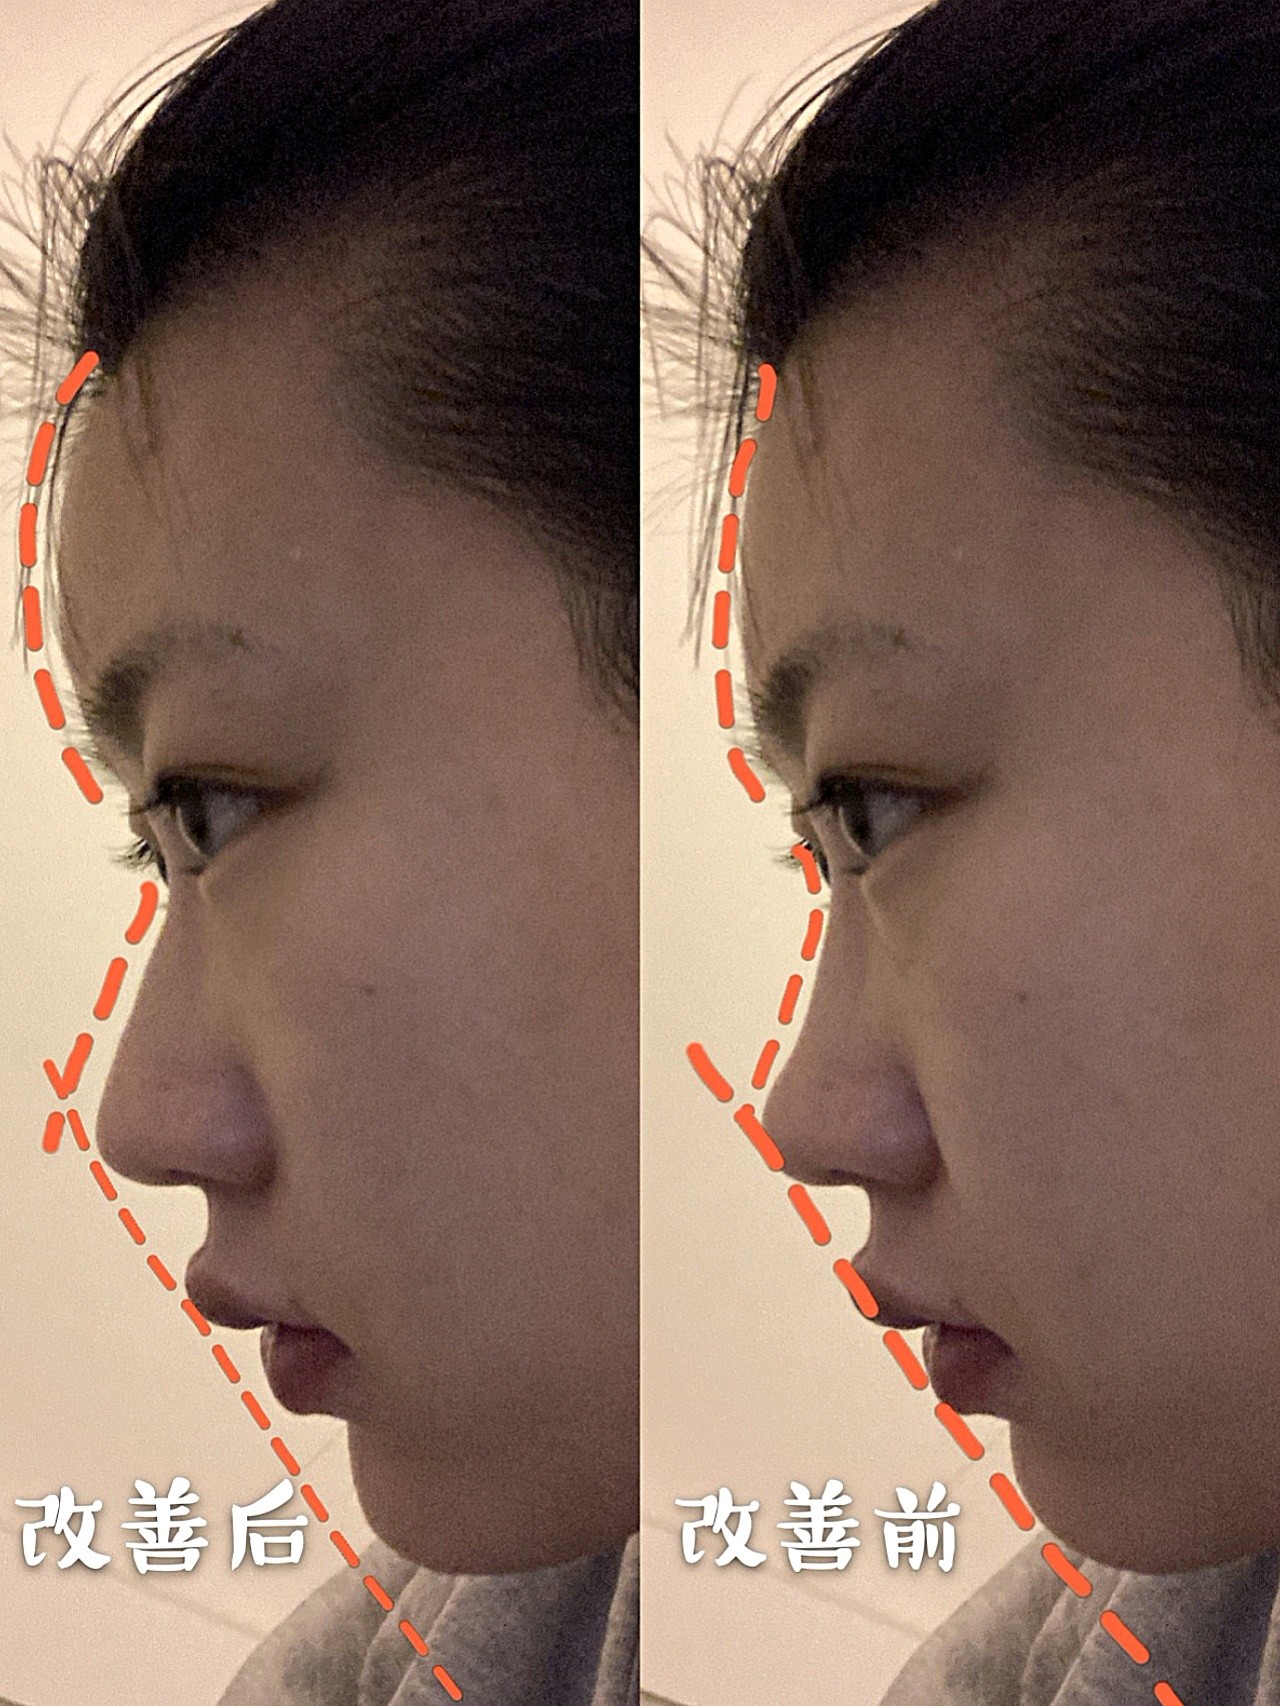 鼻基底凹陷和面中部凹陷的区别在哪里？ - 知乎